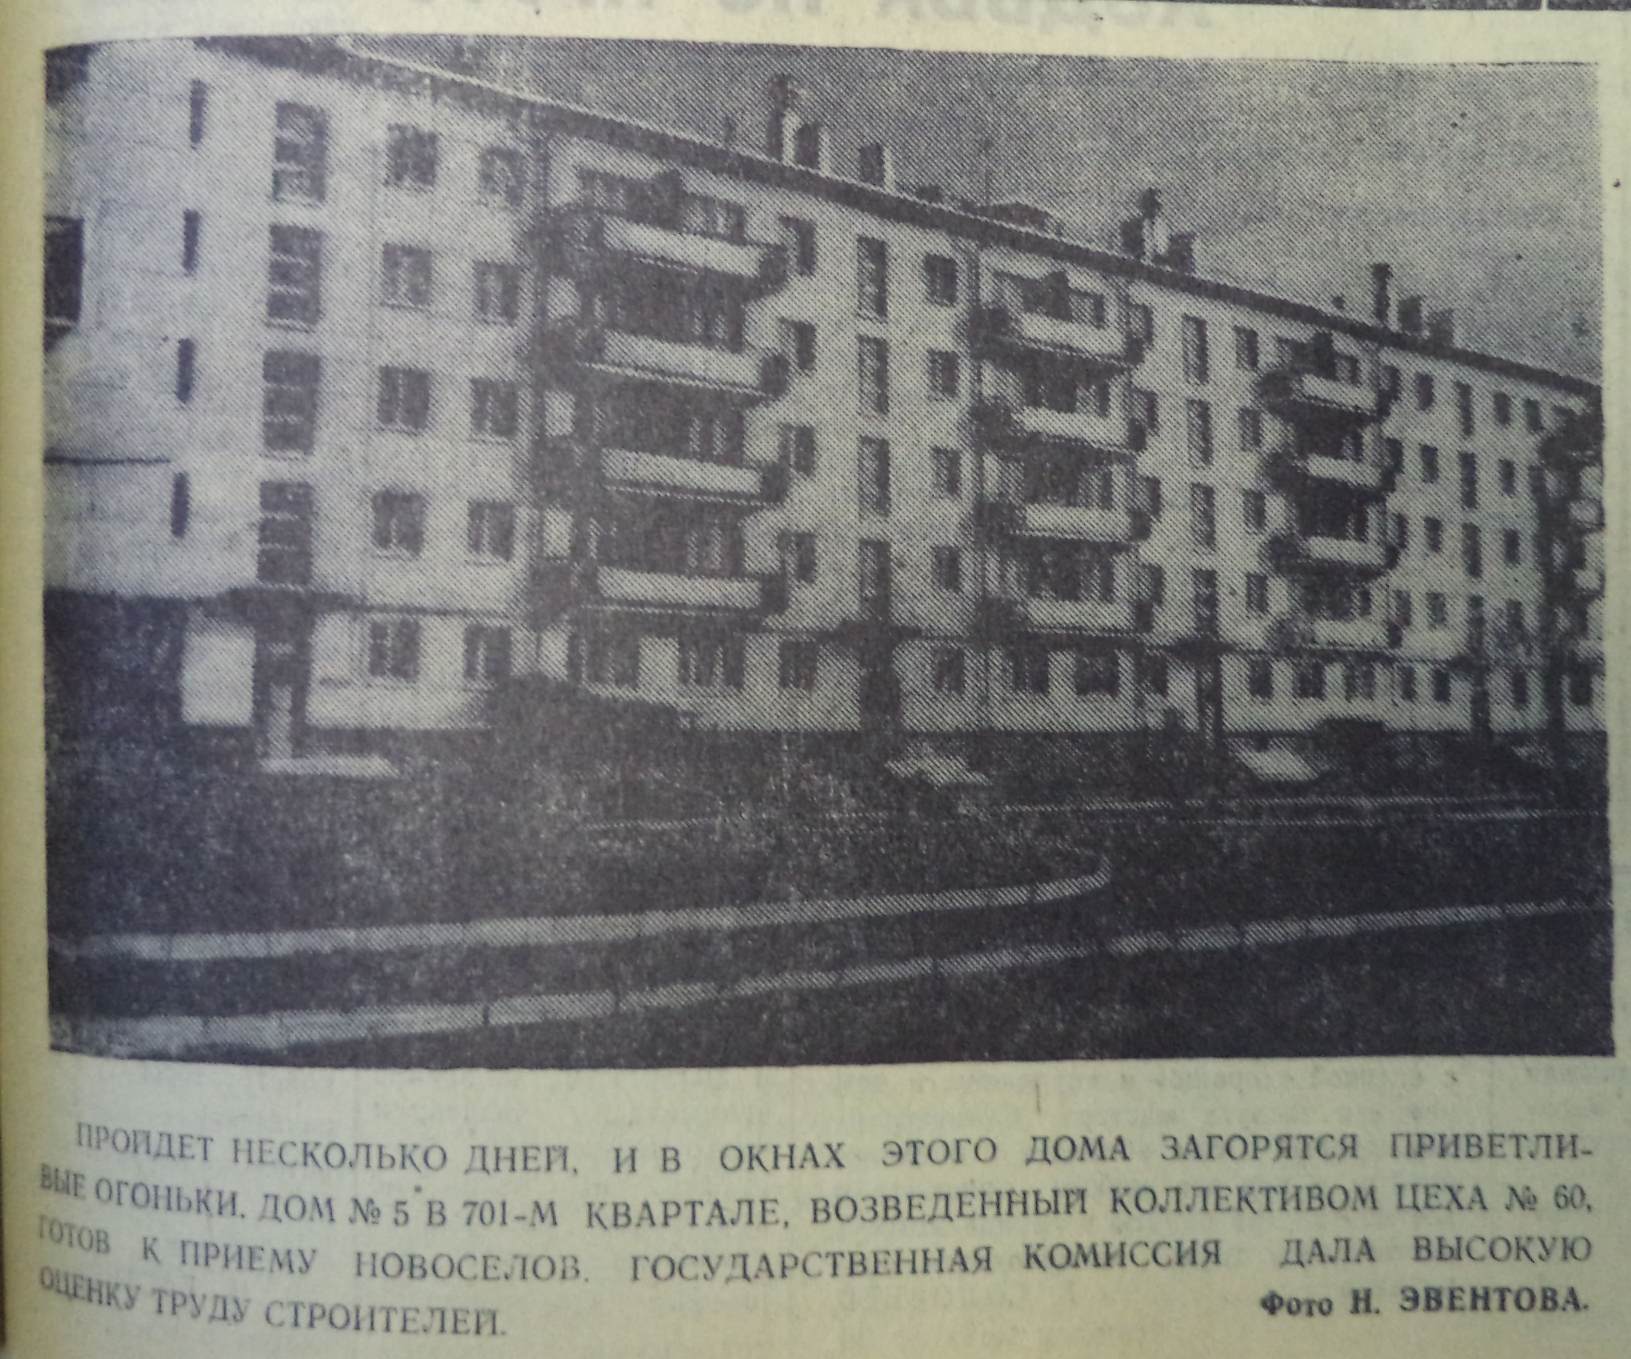 Ставропольская-ФОТО-59-Заводская жизнь-1970-11 августа-min